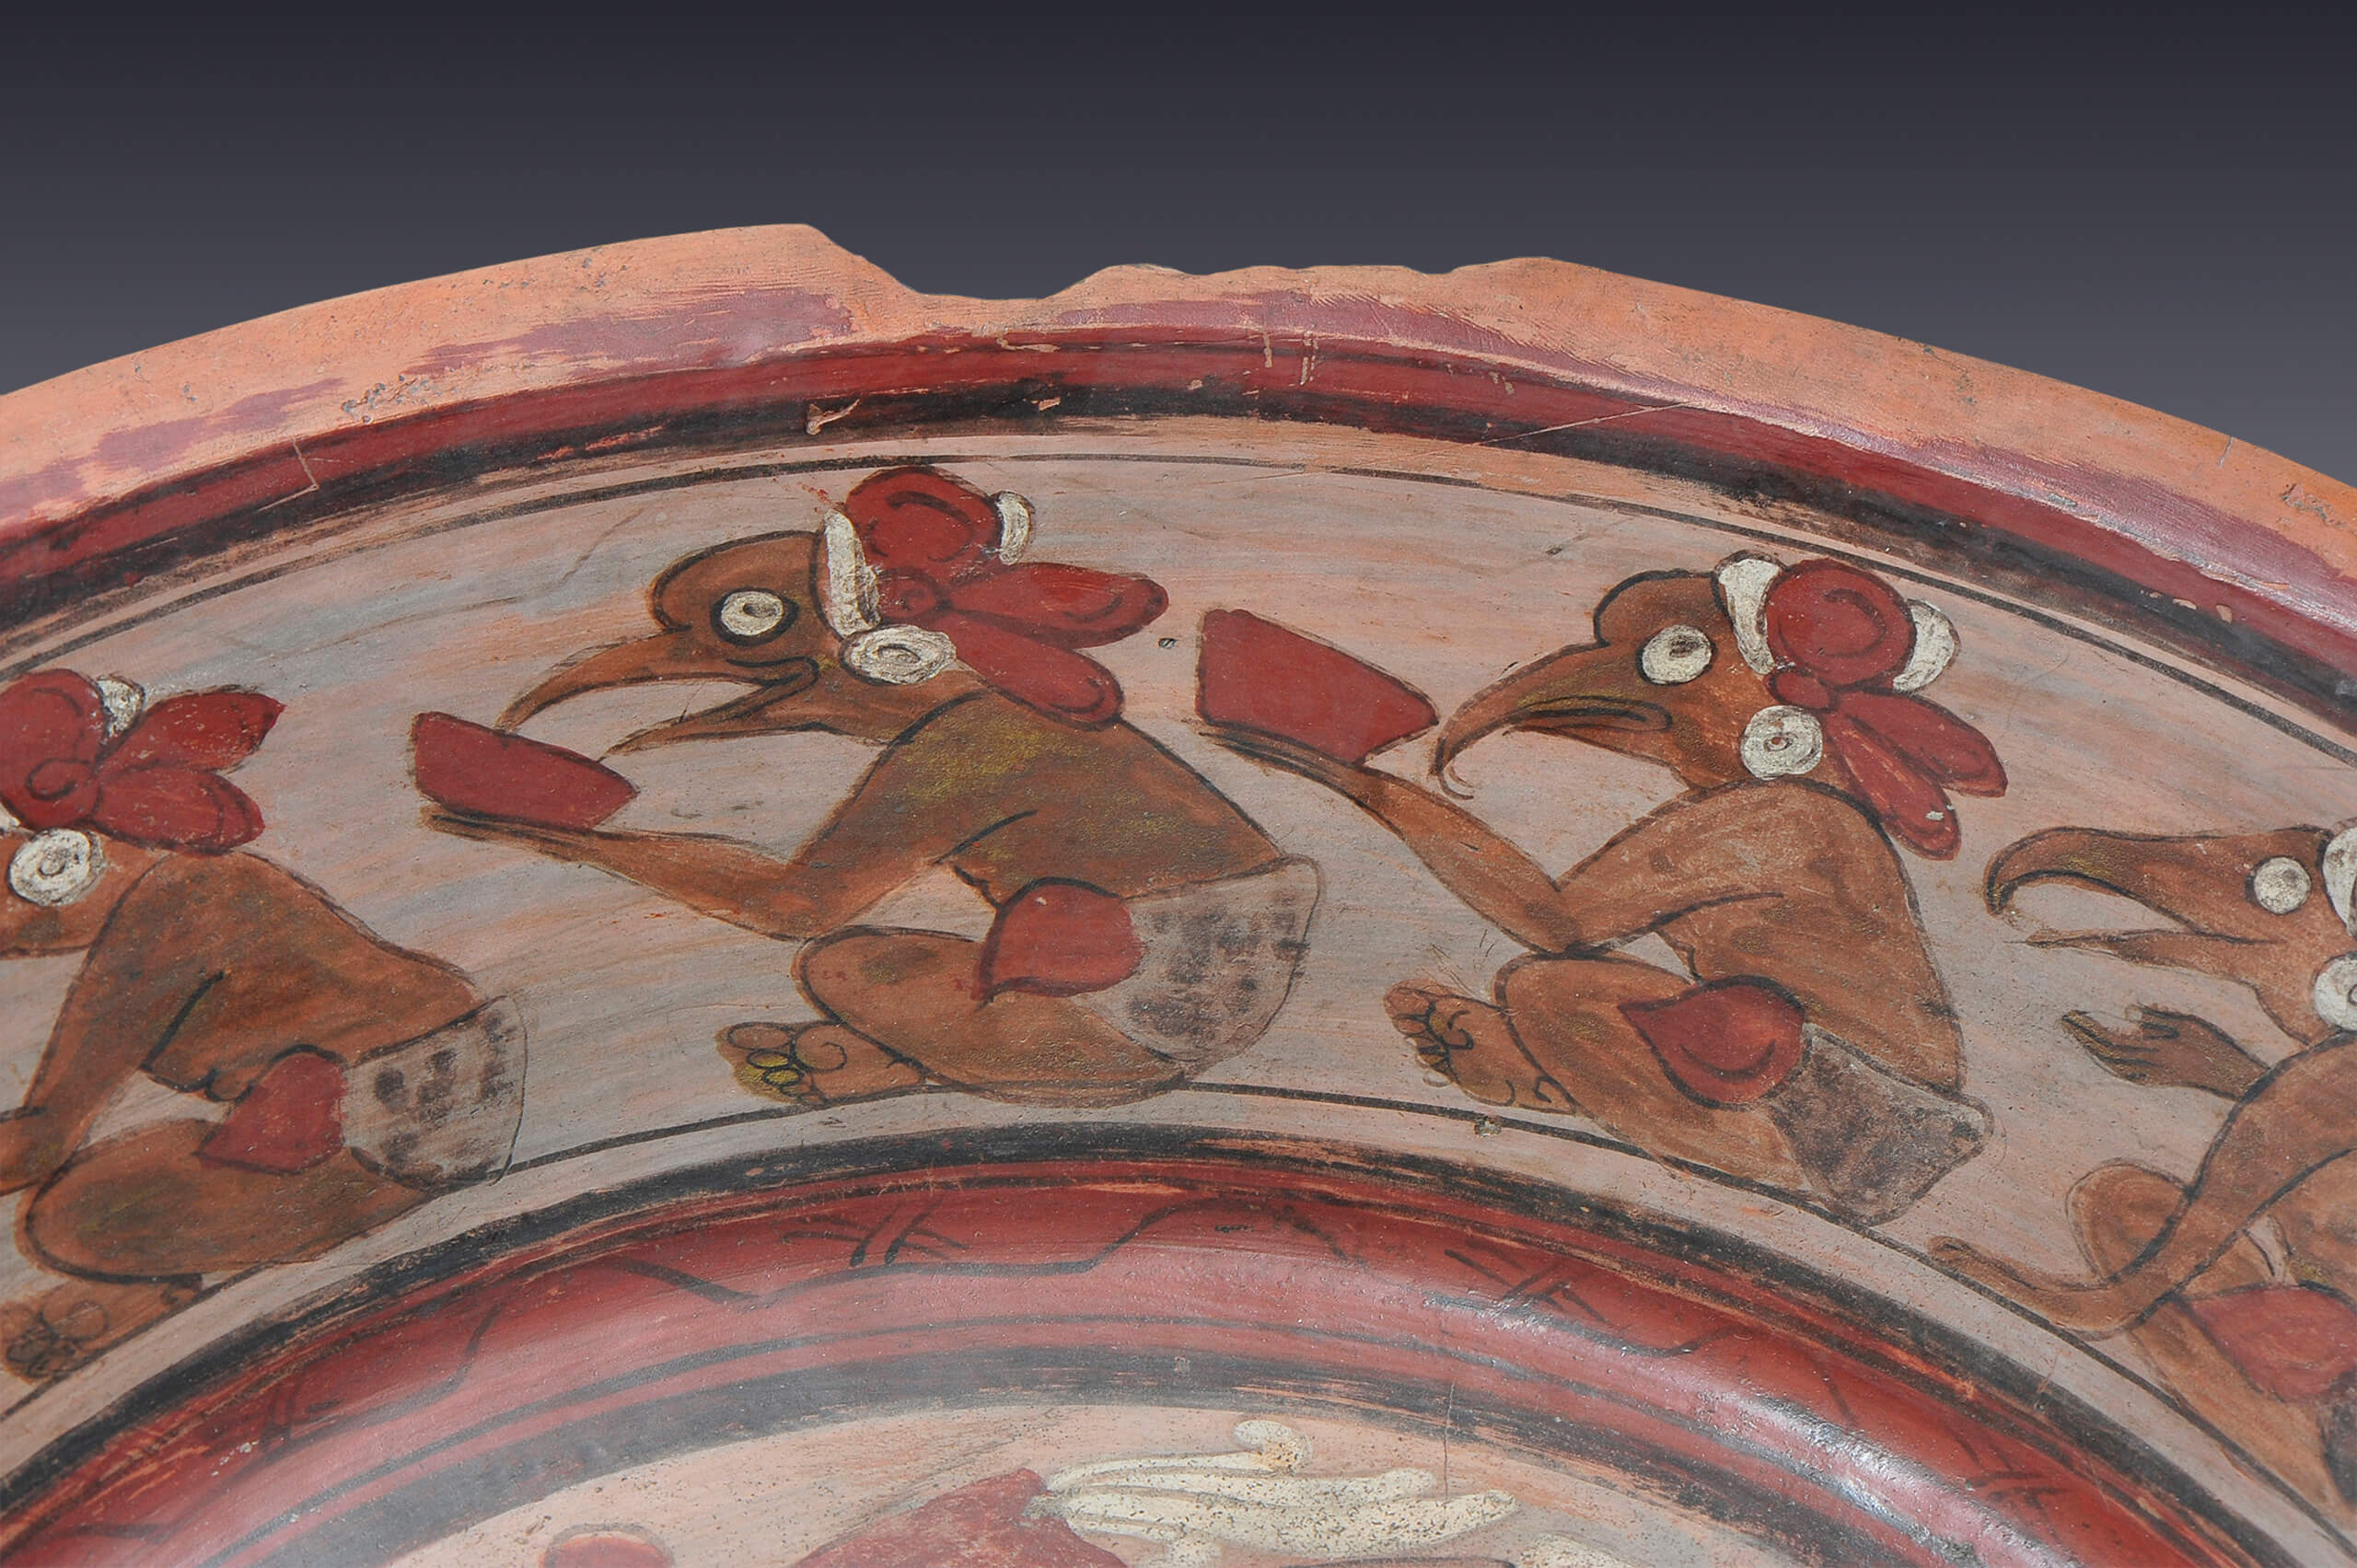 Plato con sacerdote y aves en el borde | El México antiguo. Salas de Arte Prehispánico | Museo Amparo, Puebla